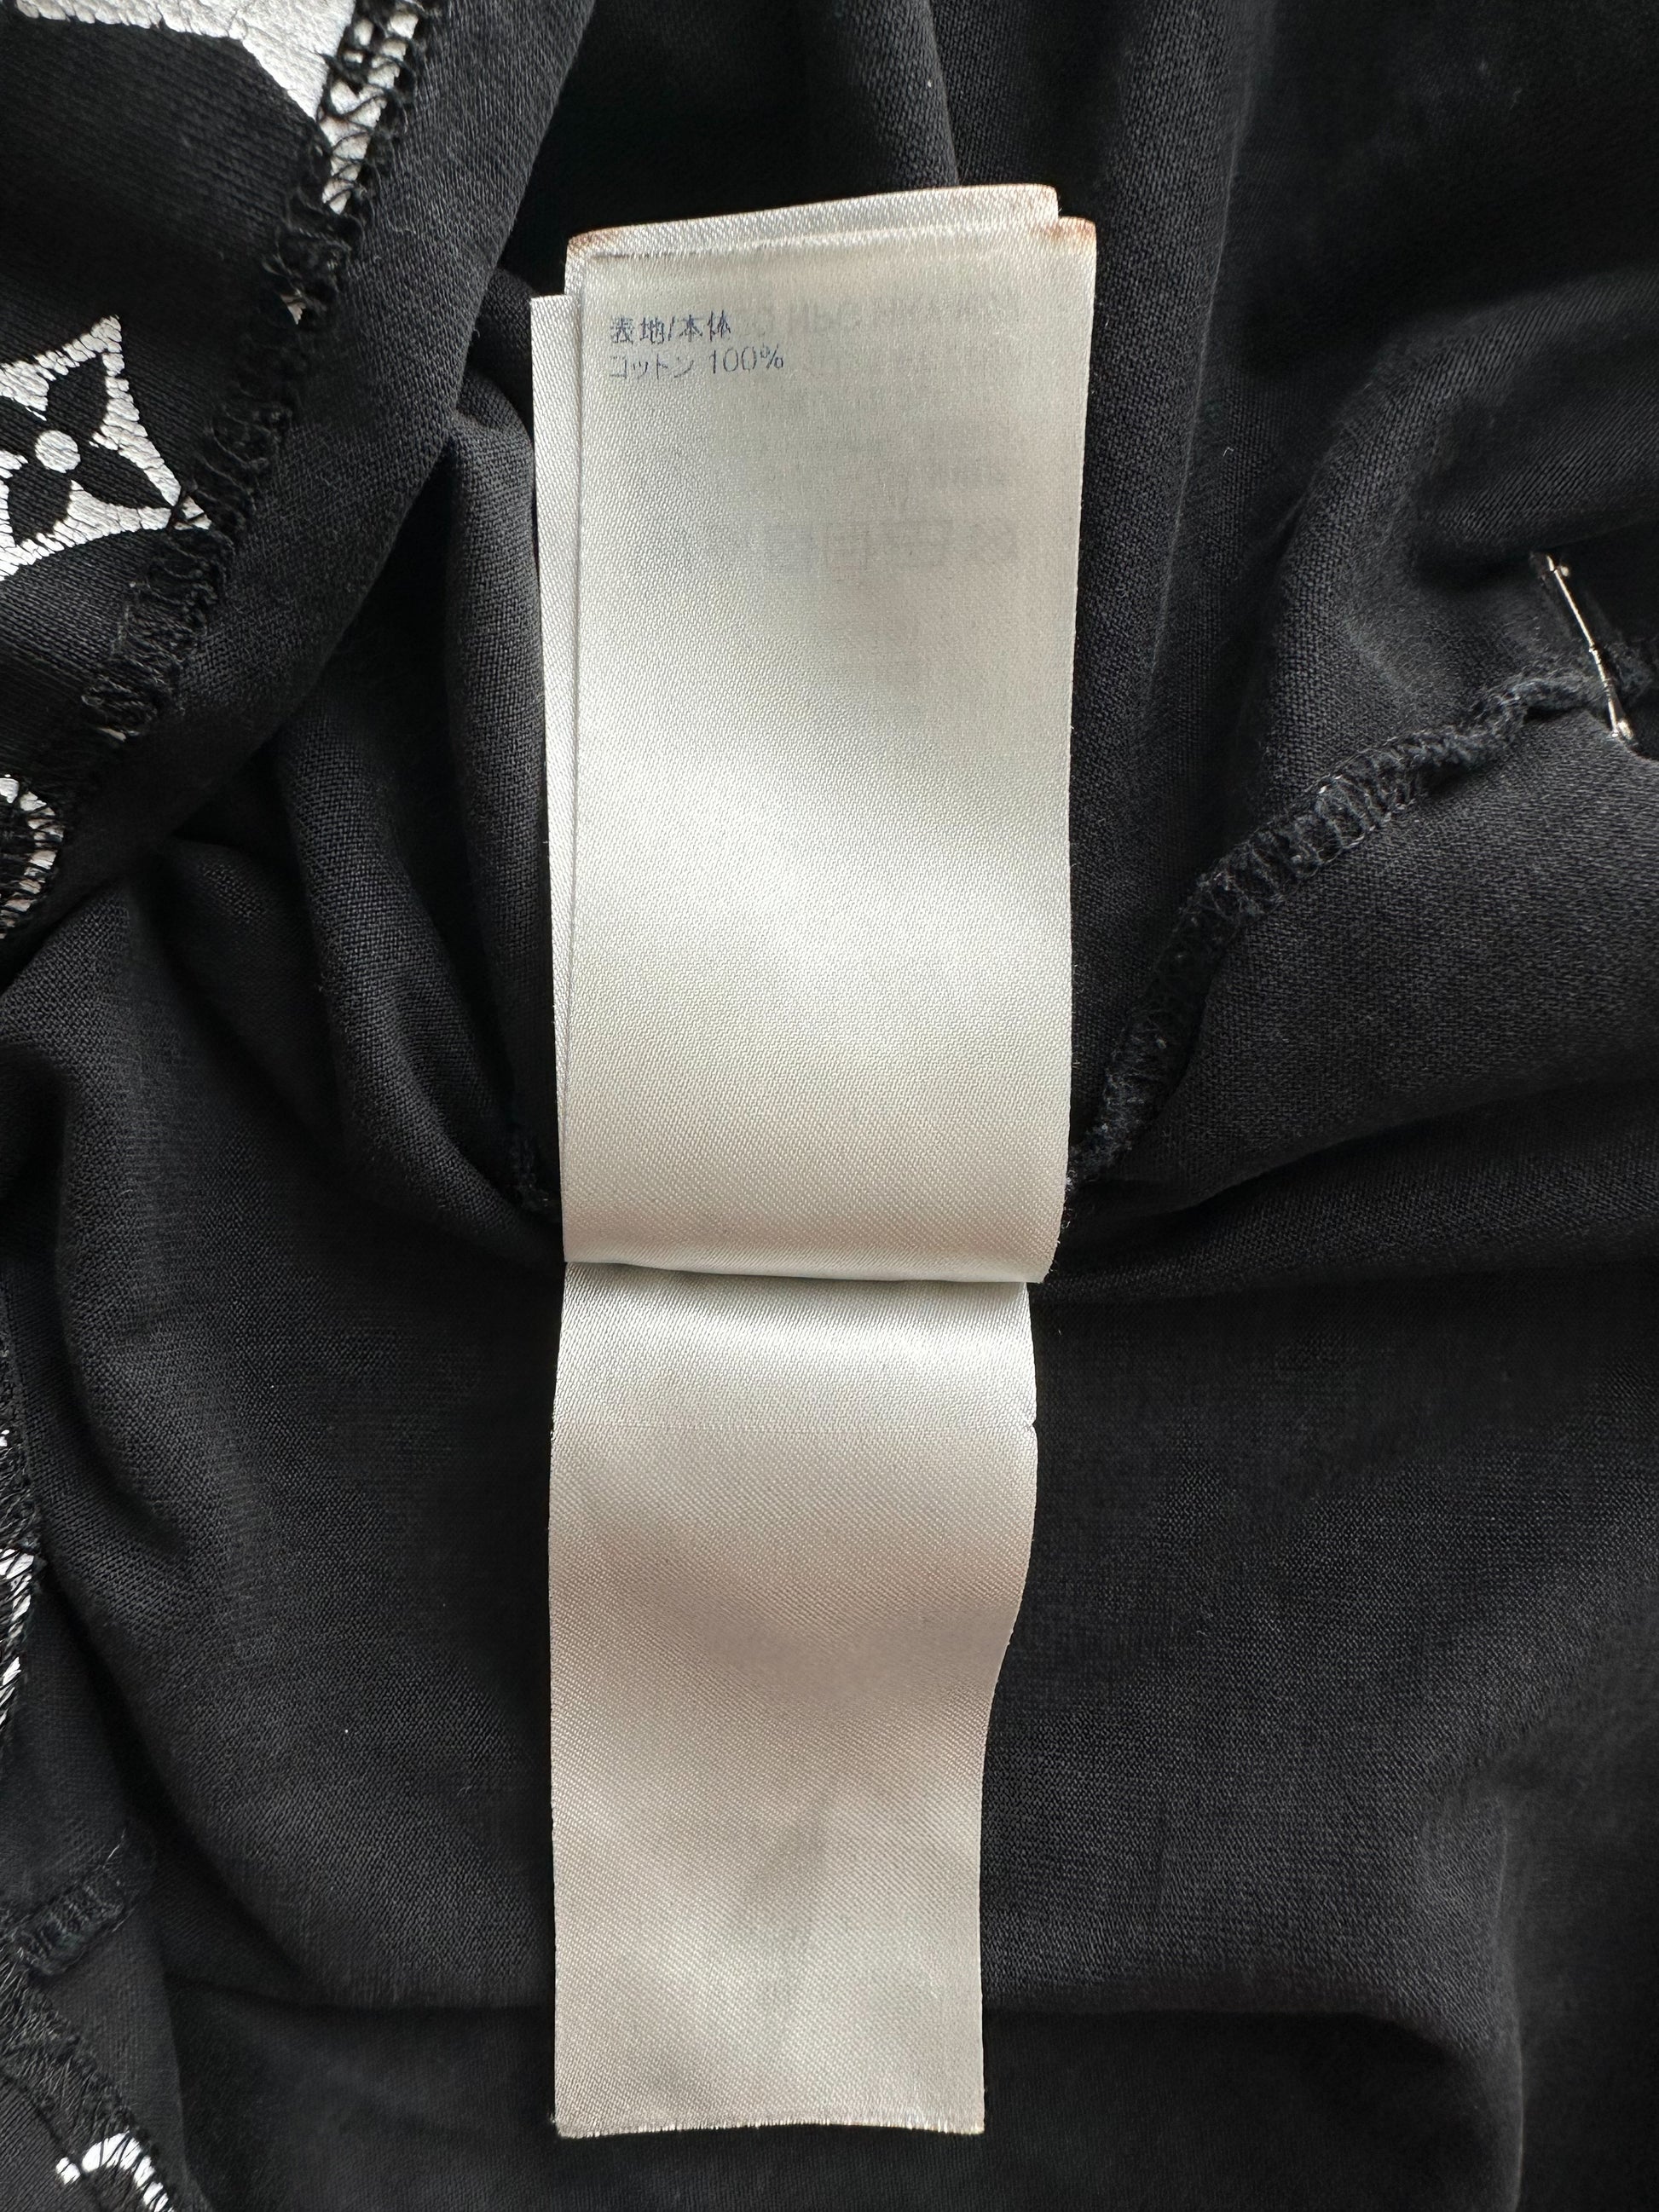 LOUIS VUITTON Cotton Monogram Gradient T-Shirt Grey